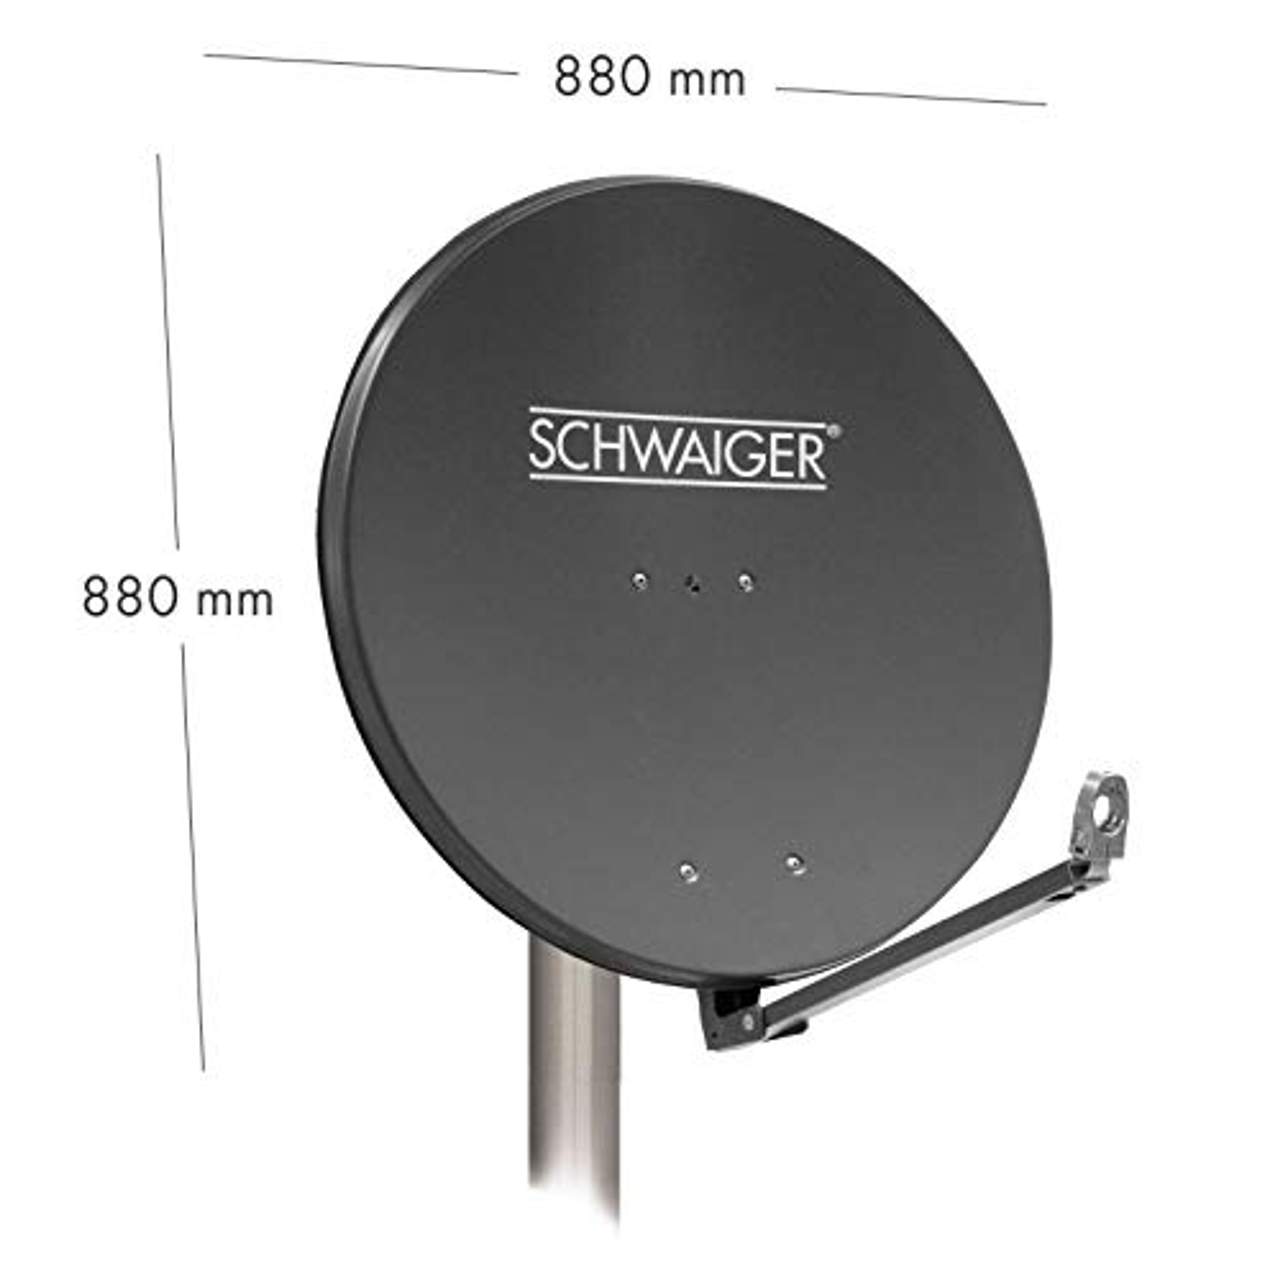 SCHWAIGER -258- Satellitenschüssel Sat Antenne